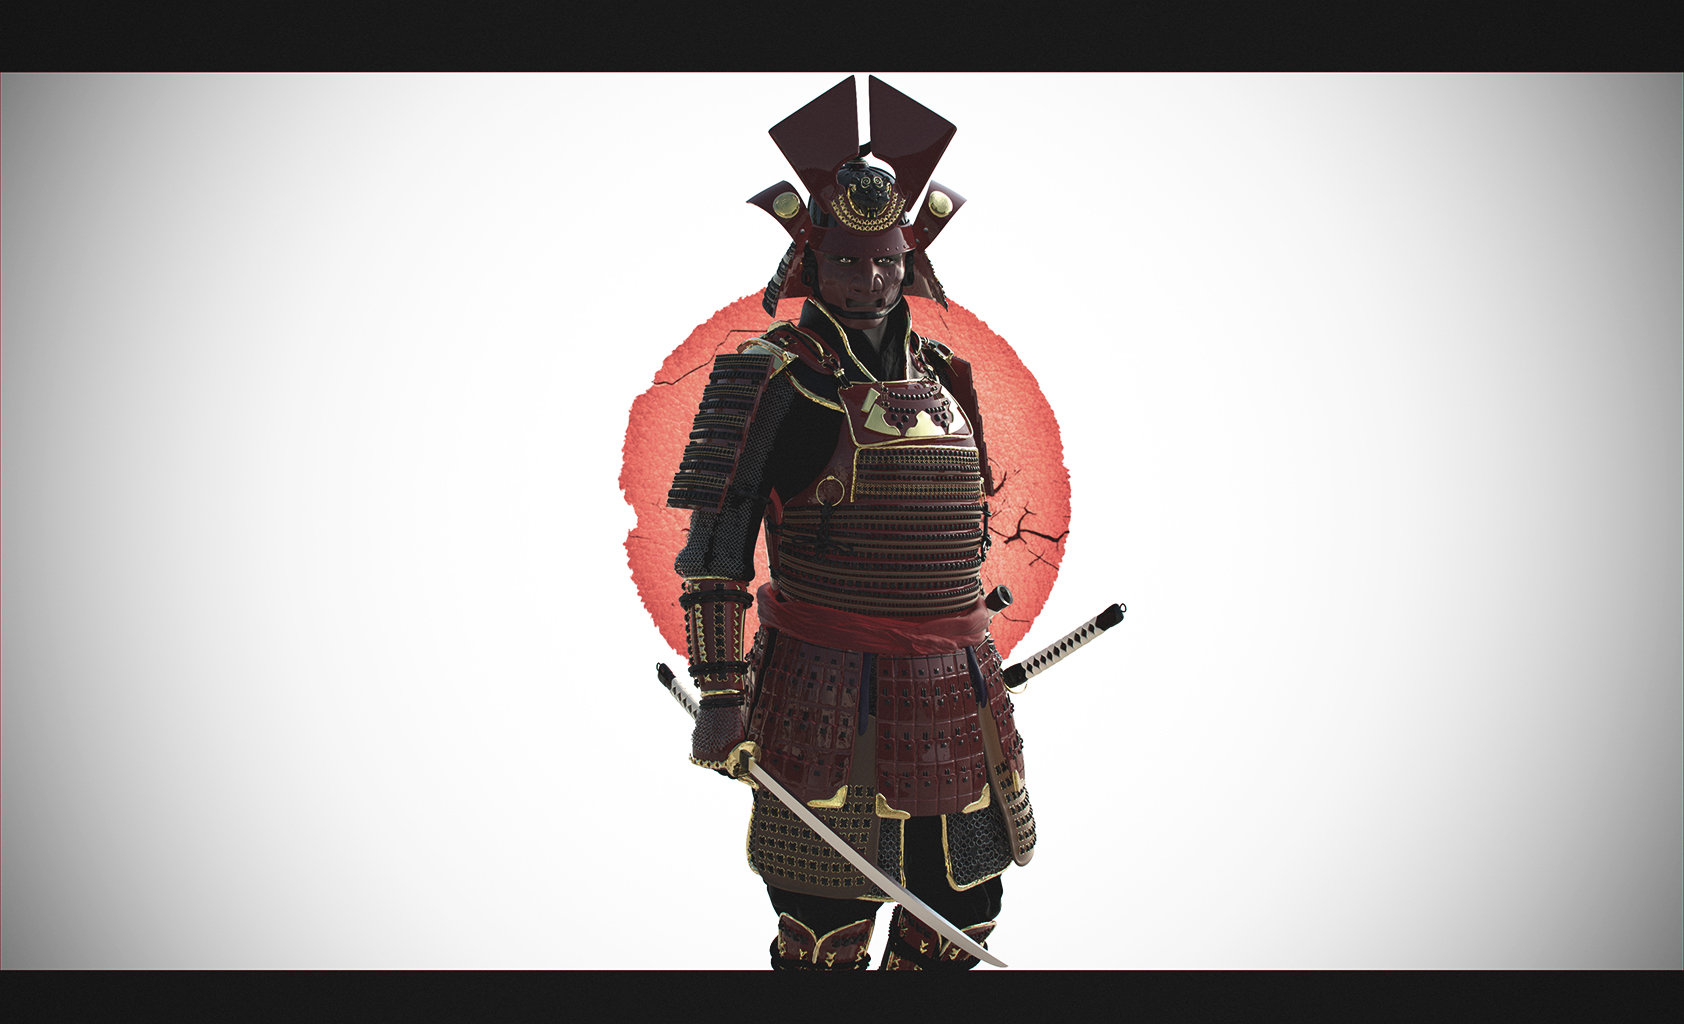 the samurai leader